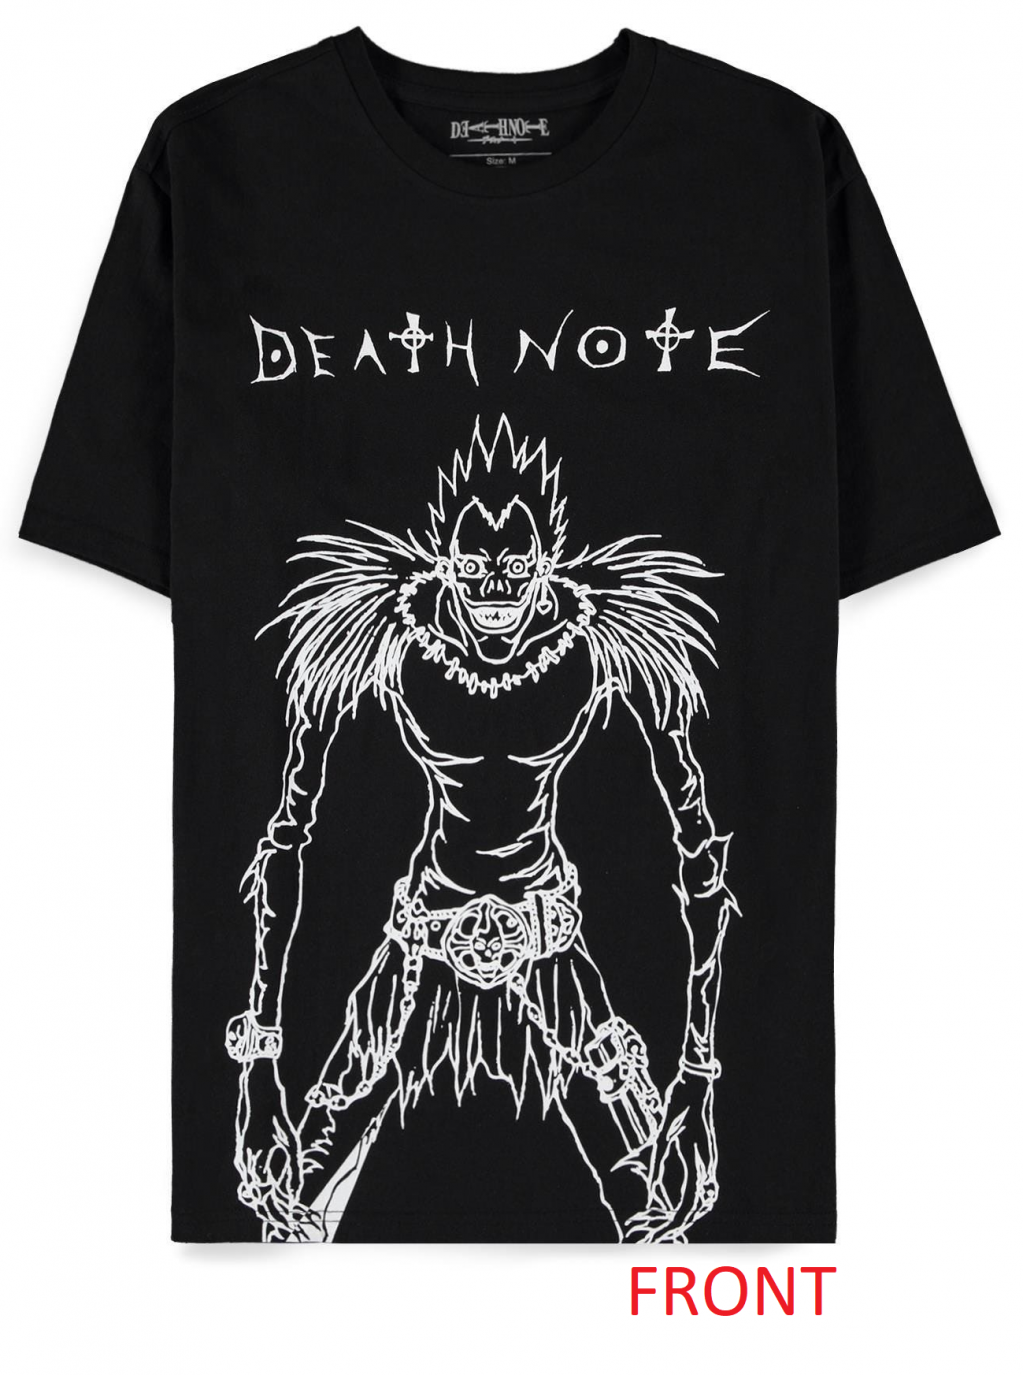 DEATH NOTE - Ryuk Front - Men's Black T-Shirt (M)